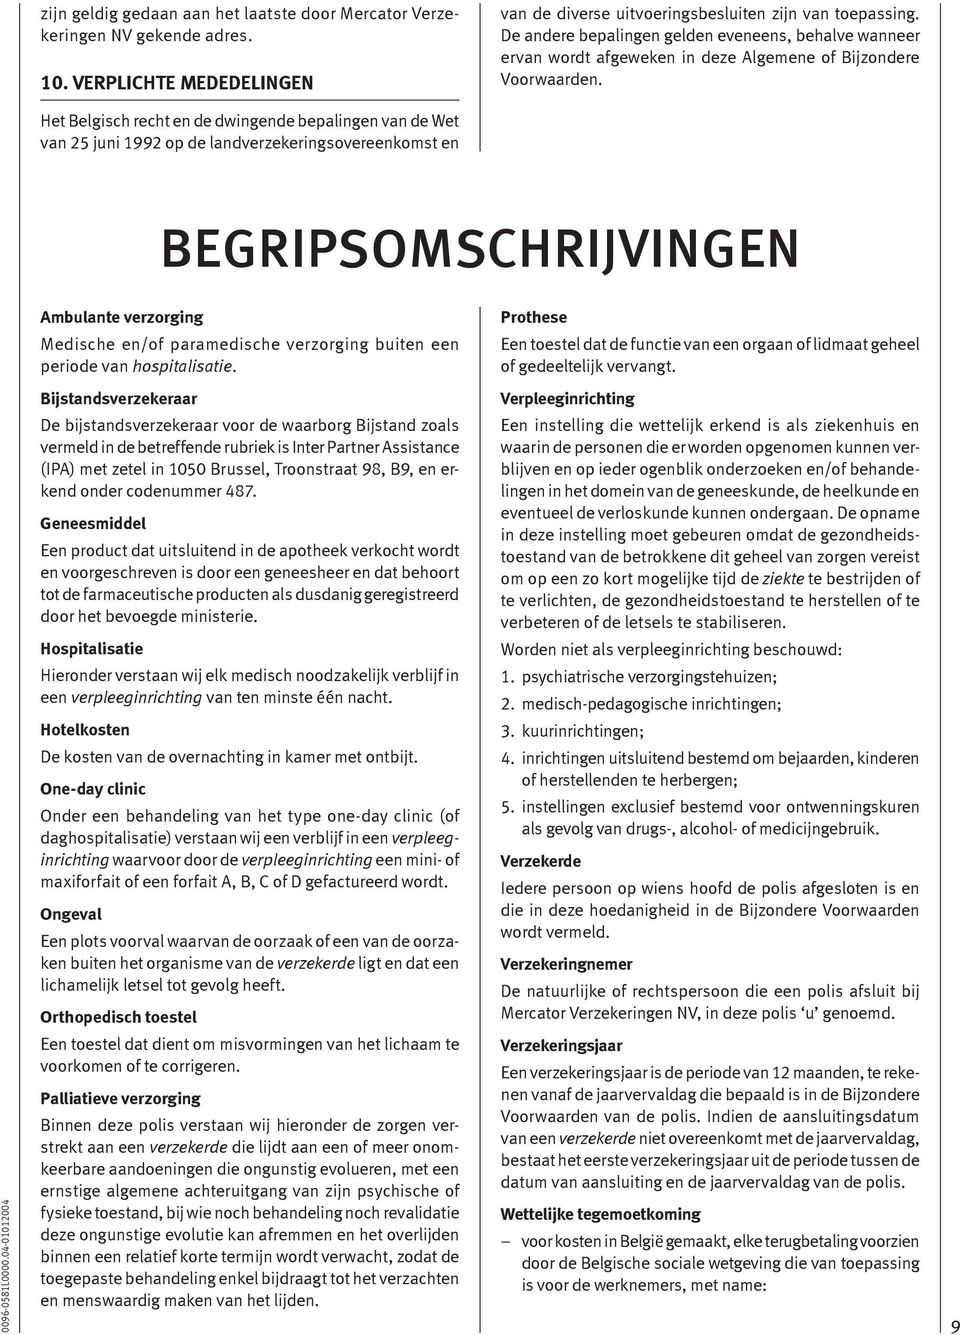 Het Belgisch recht en de dwingende bepalingen van de Wet van 25 juni 1992 op de landverzekeringsovereenkomst en BEGRIPSOMSCHRIJVINGEN Ambulante verzorging Medische en/of paramedische verzorging